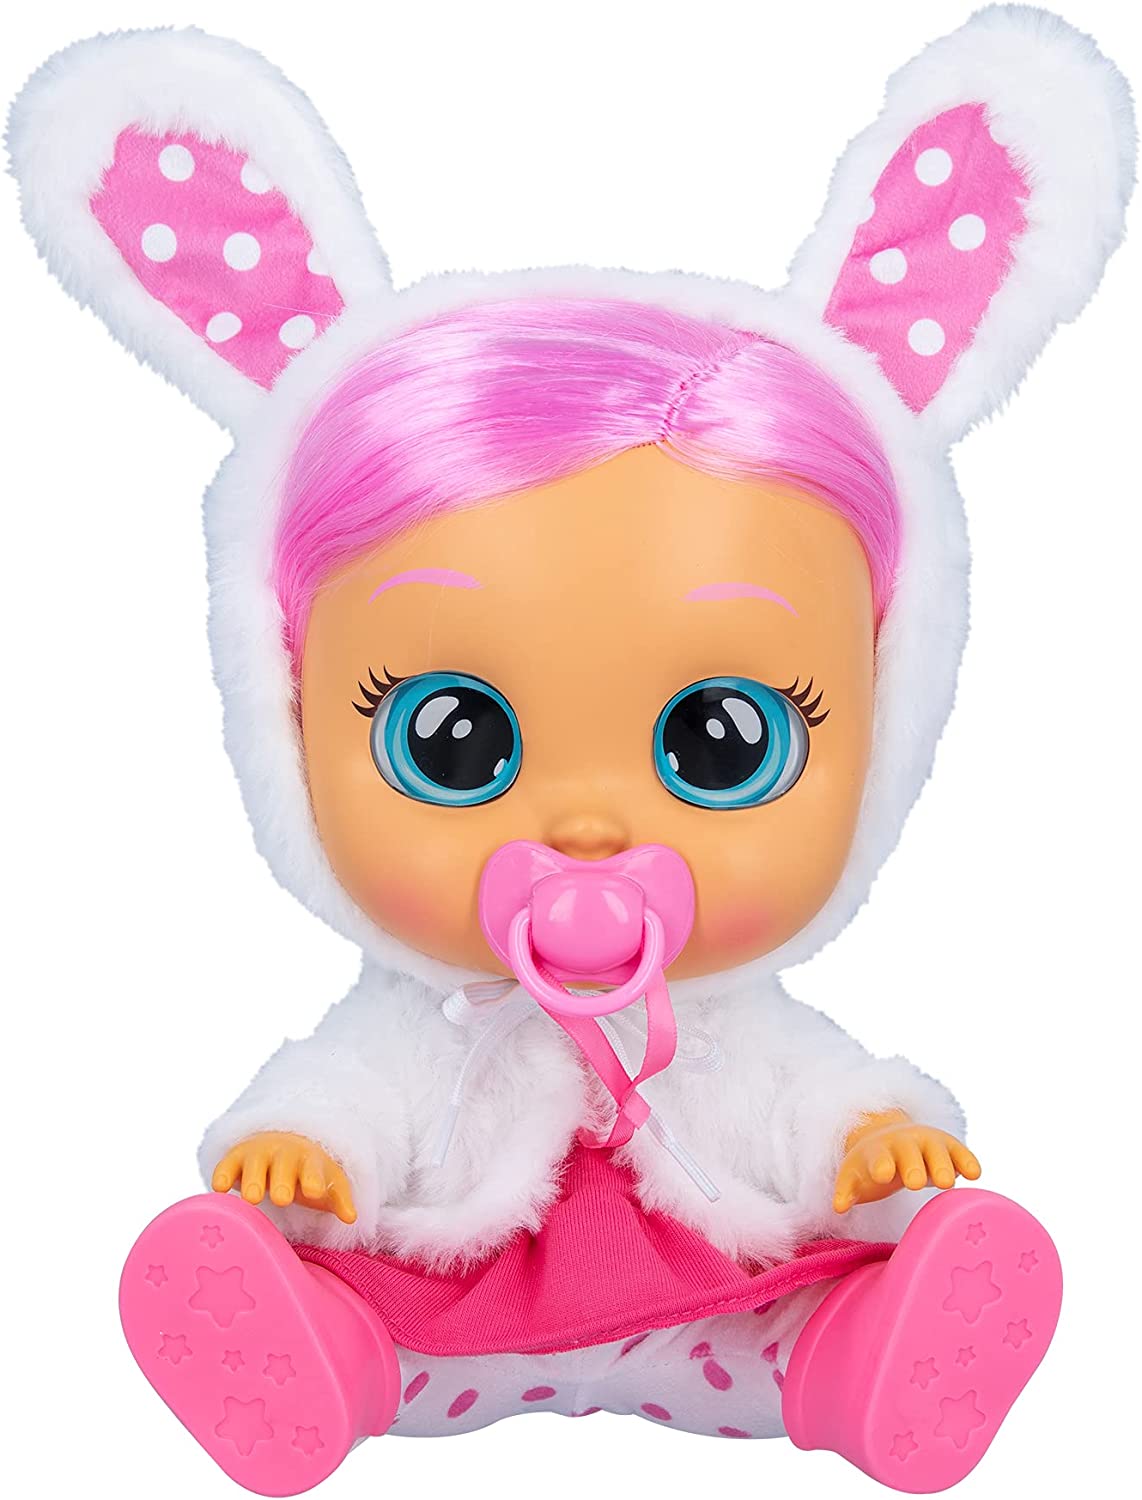 Muñeca de bebé Coney vestido rosa, chaqueta esponjosa blanca con temática de conejito Cry Babies